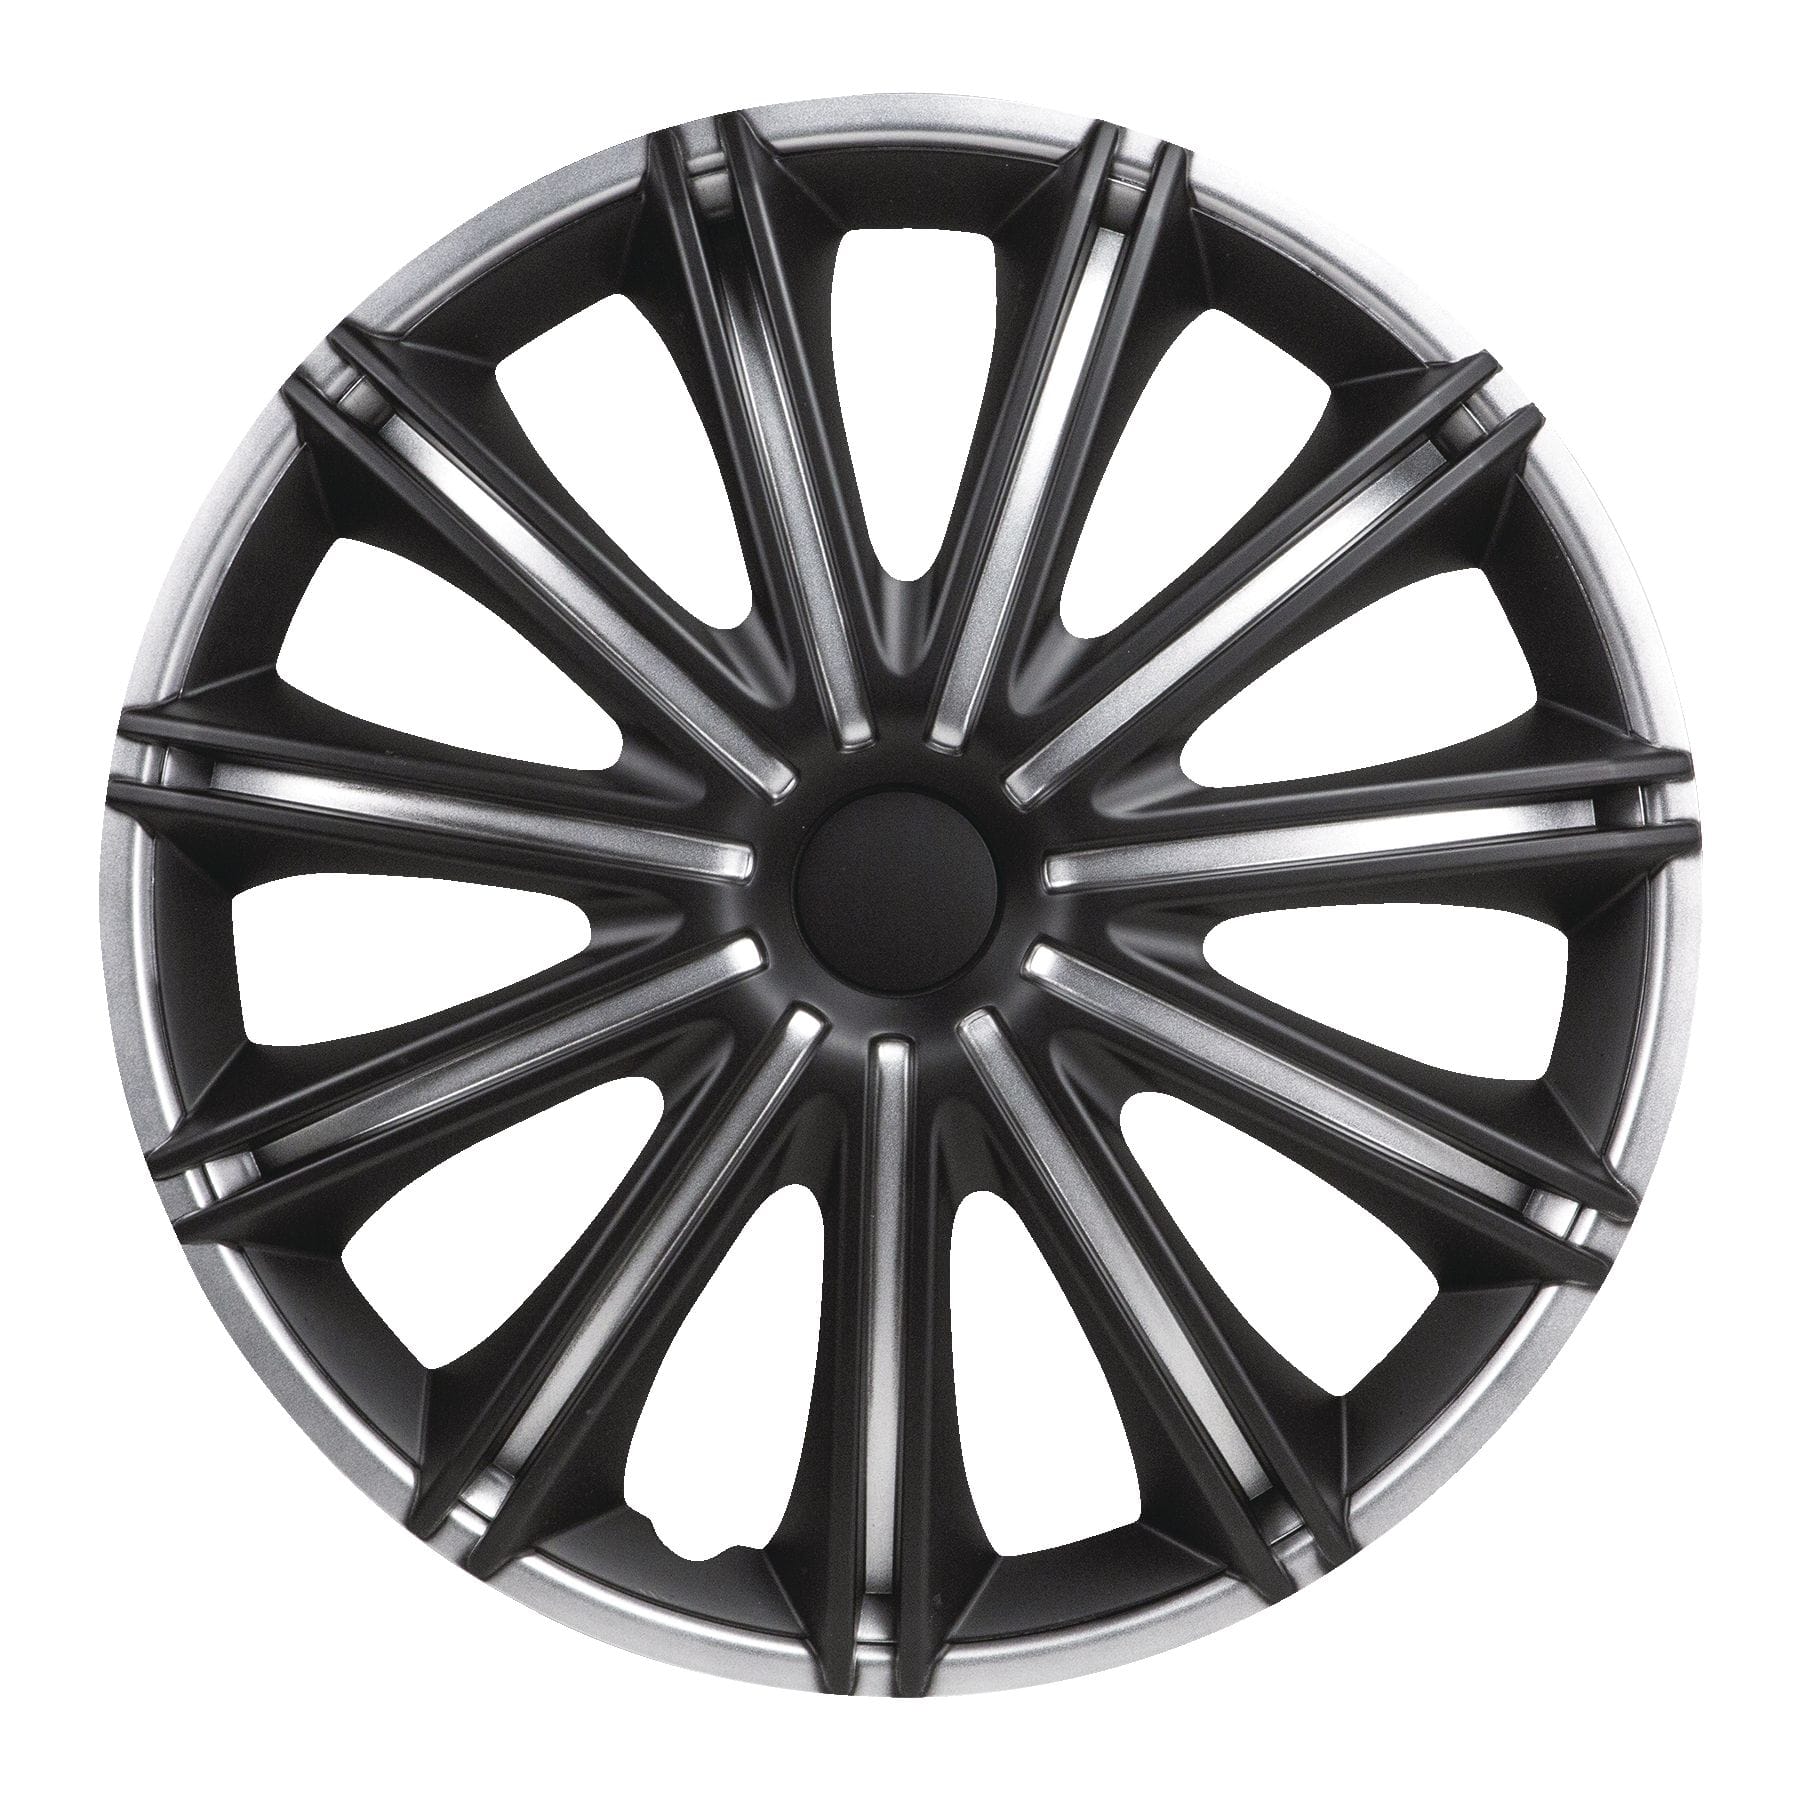 DriveStyle Nero Wheel Cover, Silver/Black, 18-in, 4-pk